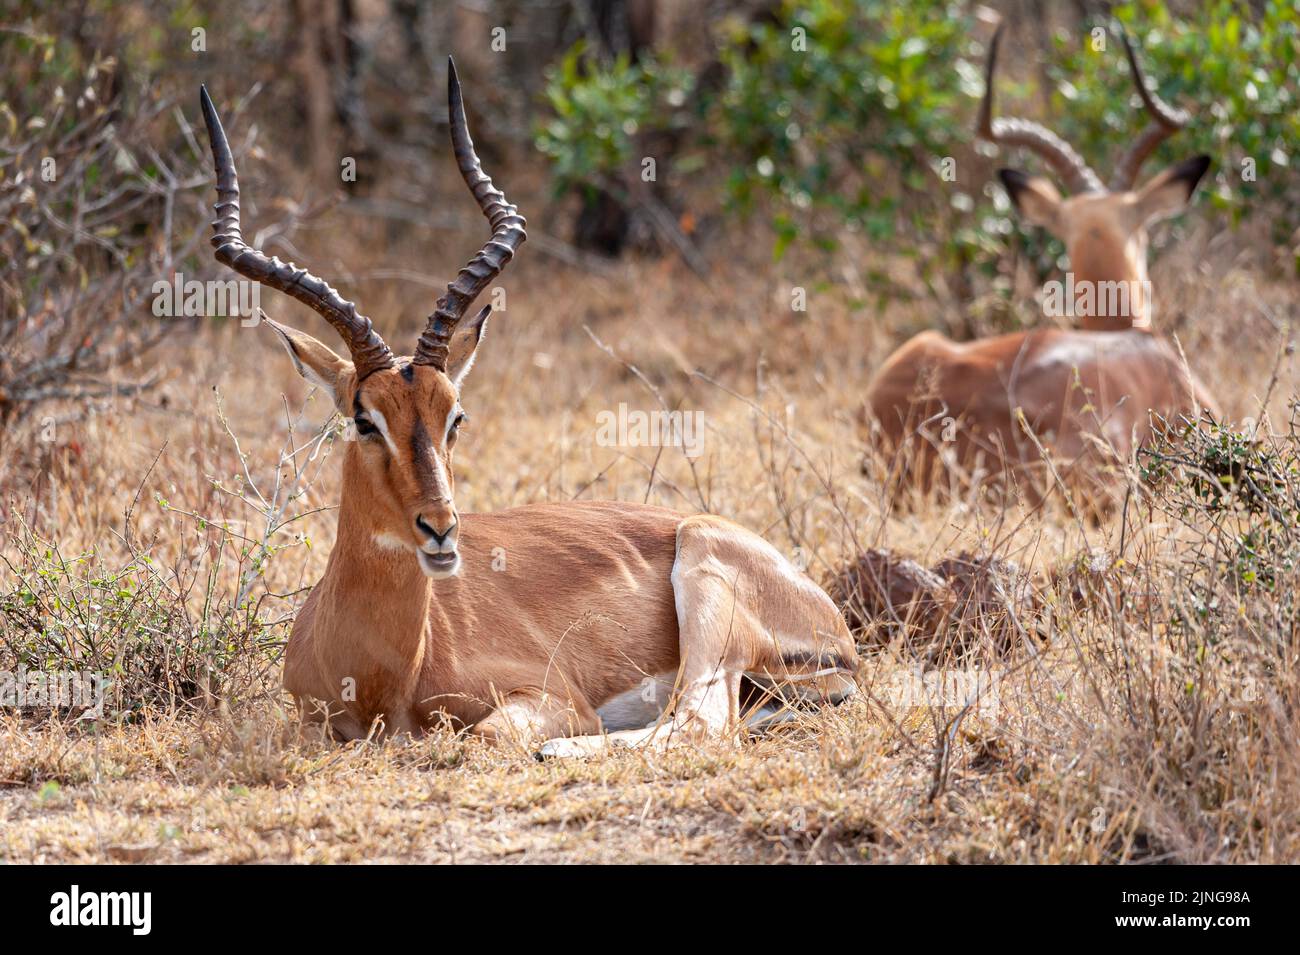 Deux Impala dans leur habitat sauvage, Afrique du Sud, observation de la faune Banque D'Images